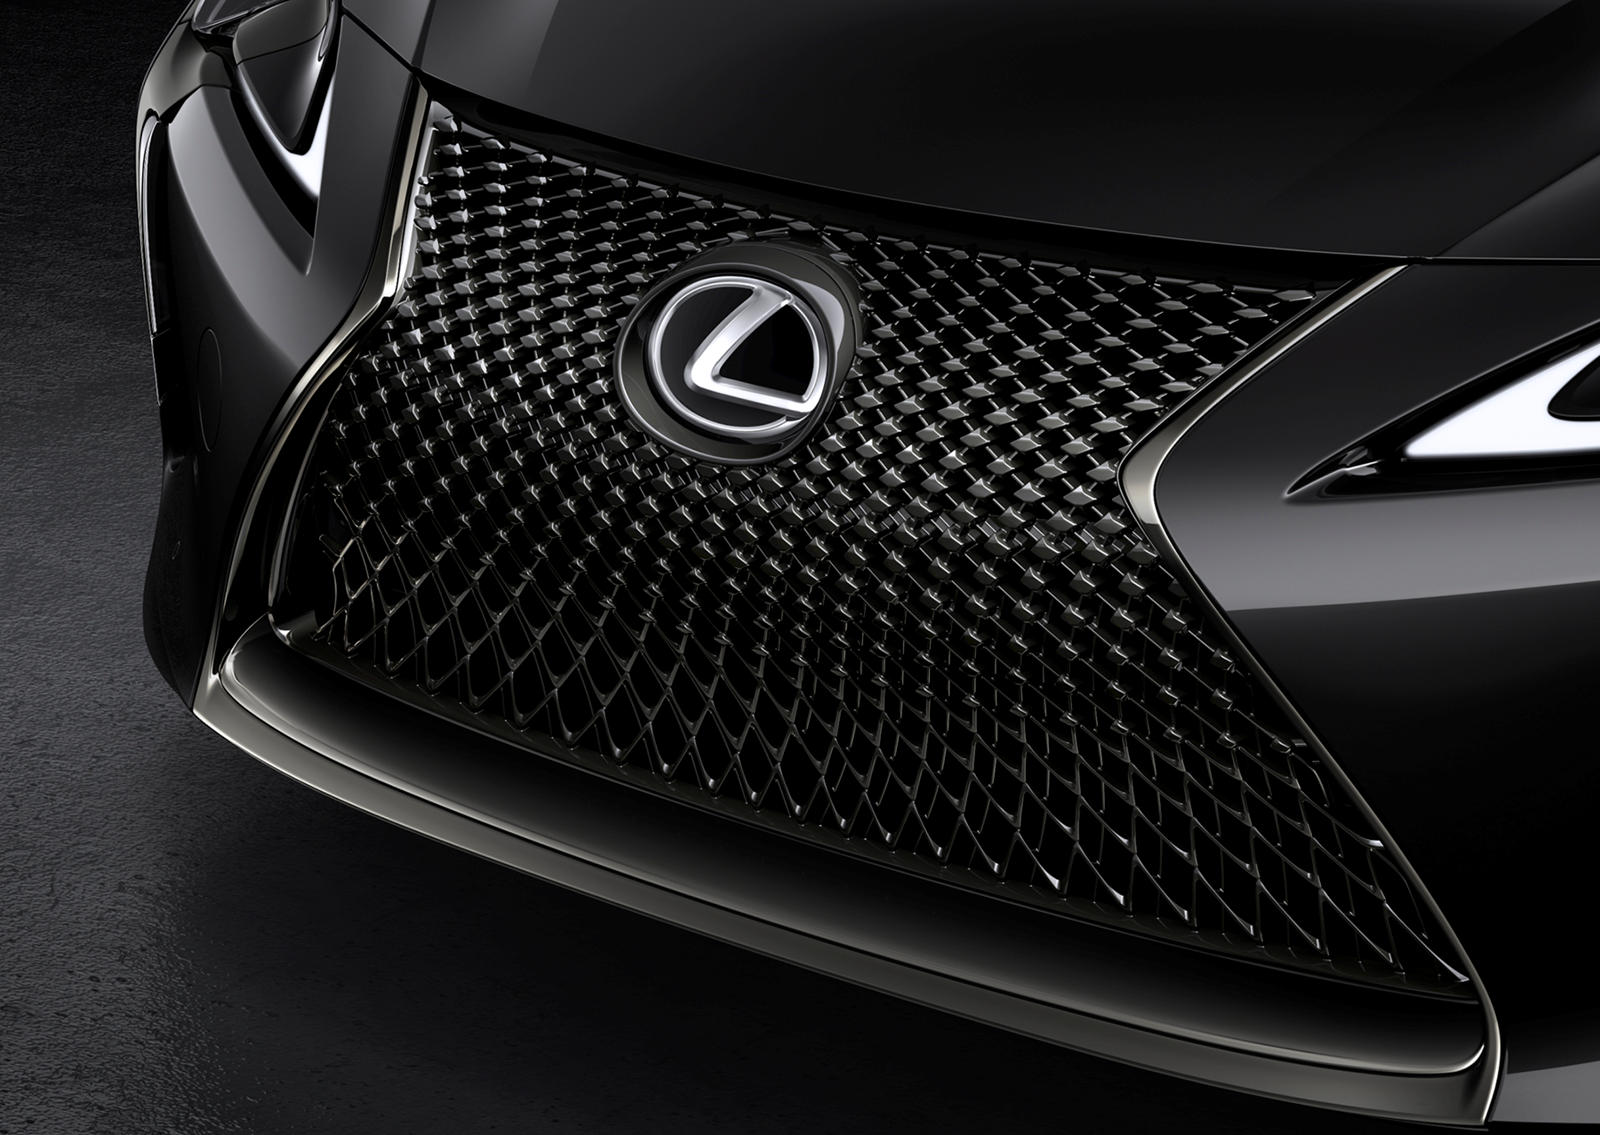 2021 Lexus LC 500 Coupe - потрясающий автомобиль в любой конфигурации, но каждый год Lexus выпускает специальную серию Inspiration Series, которая еще больше подчеркивает его красоту. В 2019 году первая серия Inspiration была выполнена в цвете Flare 